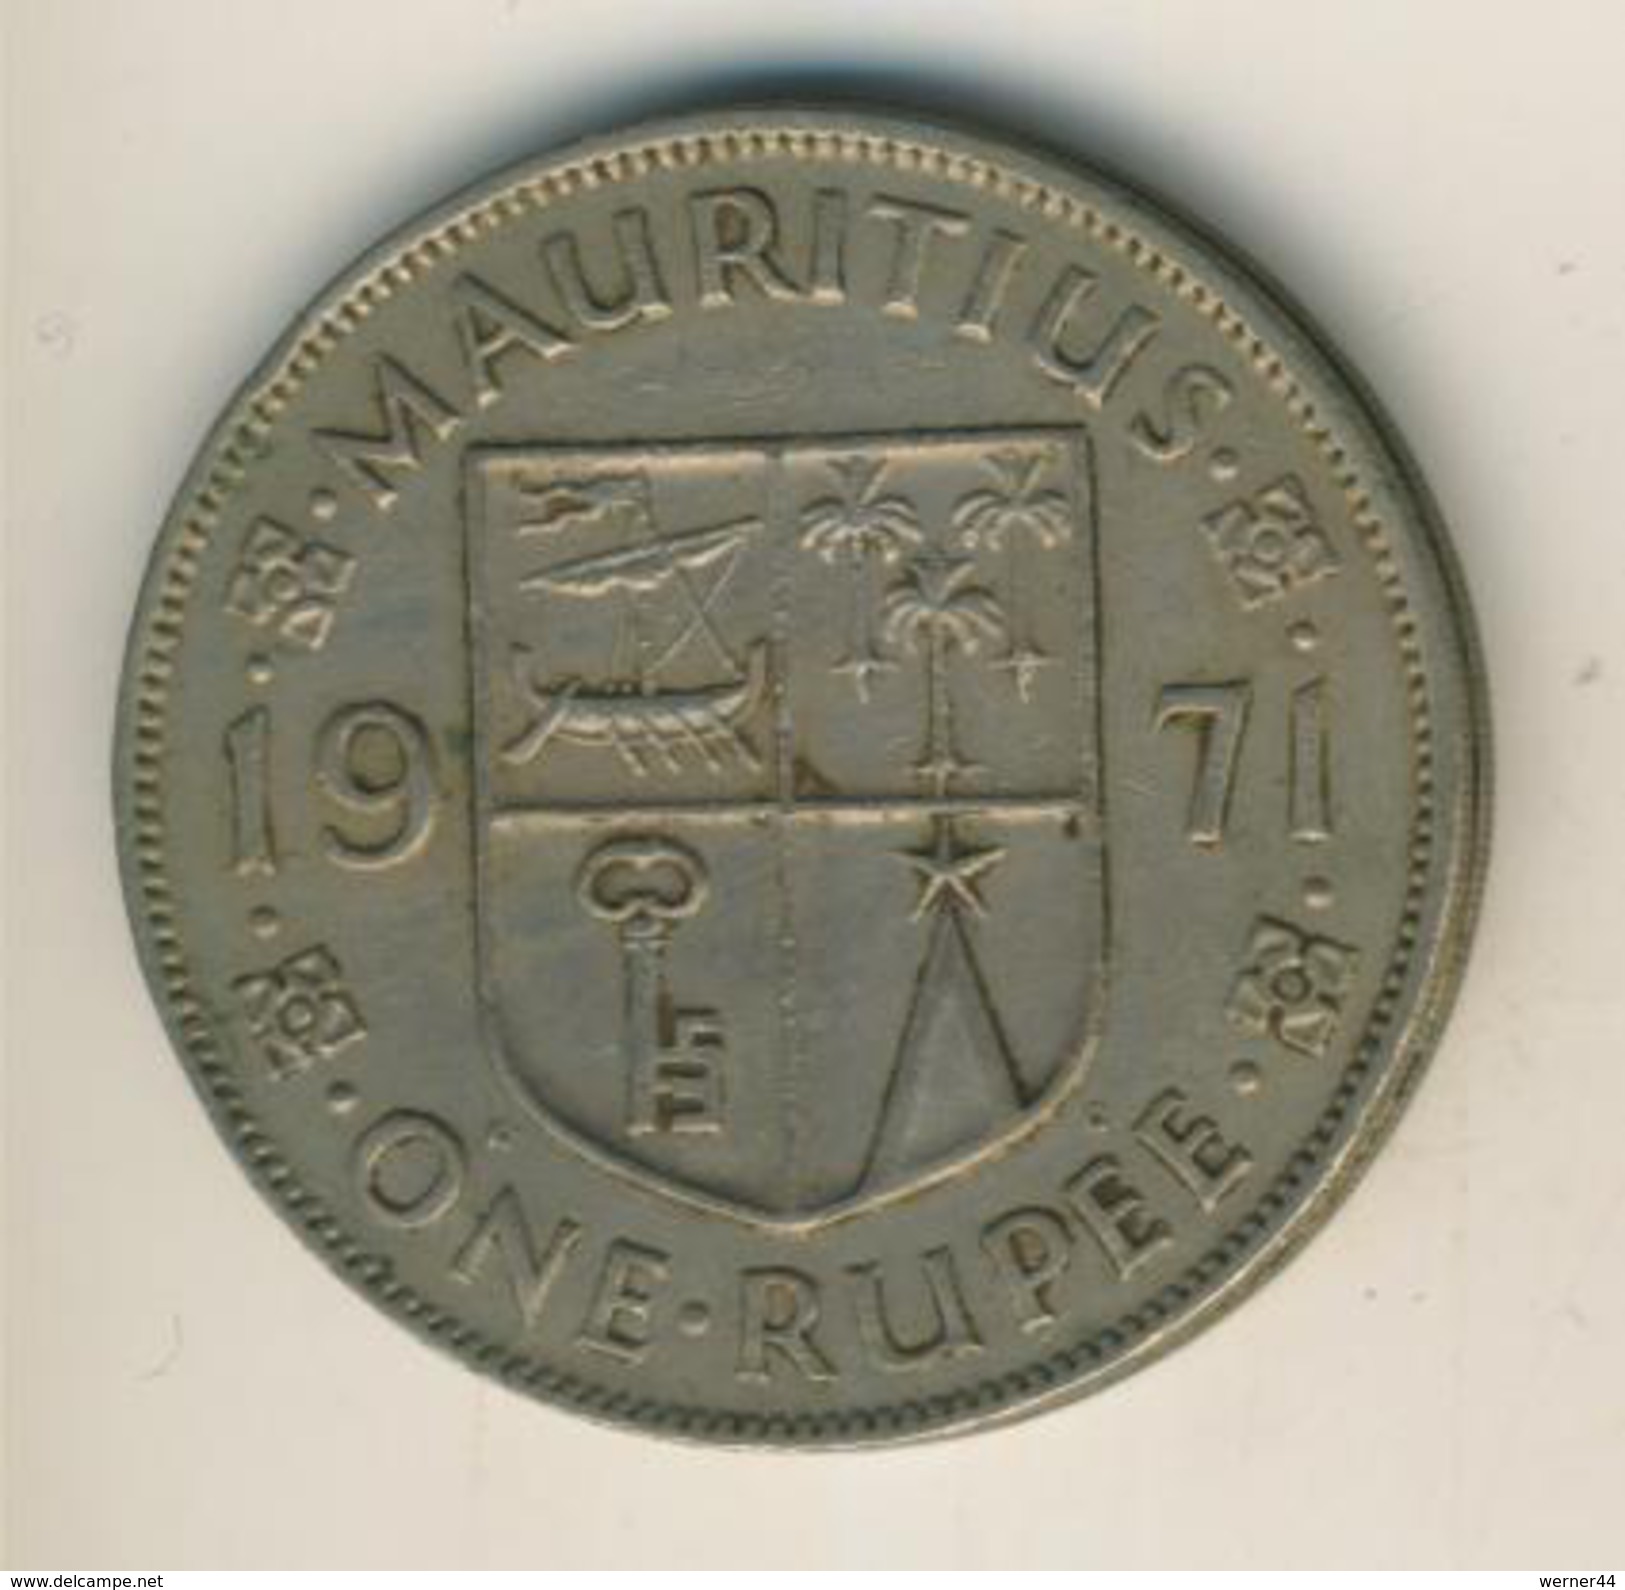 Mauritius Von 1971  1 Rupie  (48080) - Mauritius